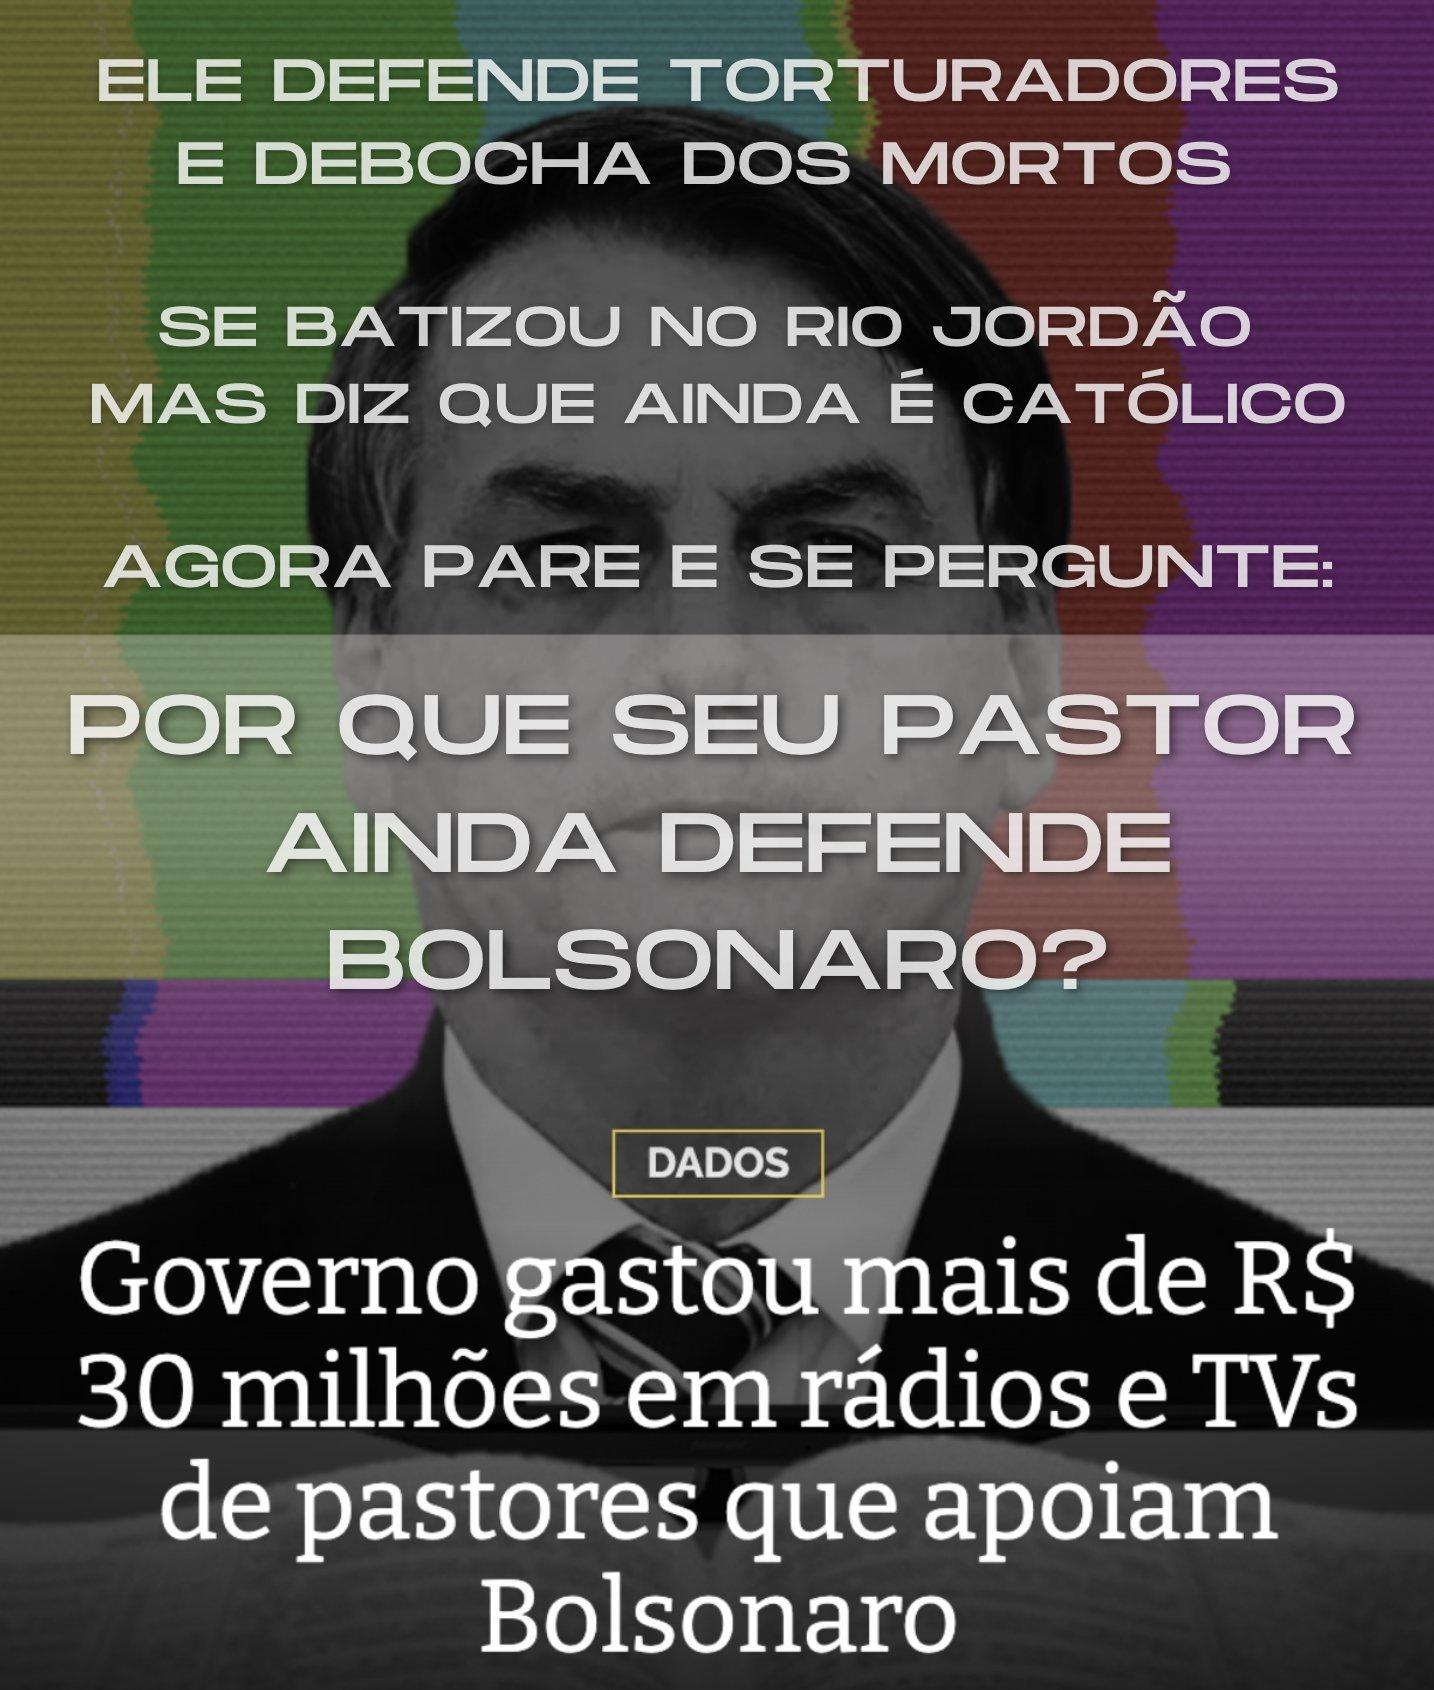 Tesoureiros - 30 milhões de reais com pastores aliados de Bolsonaro